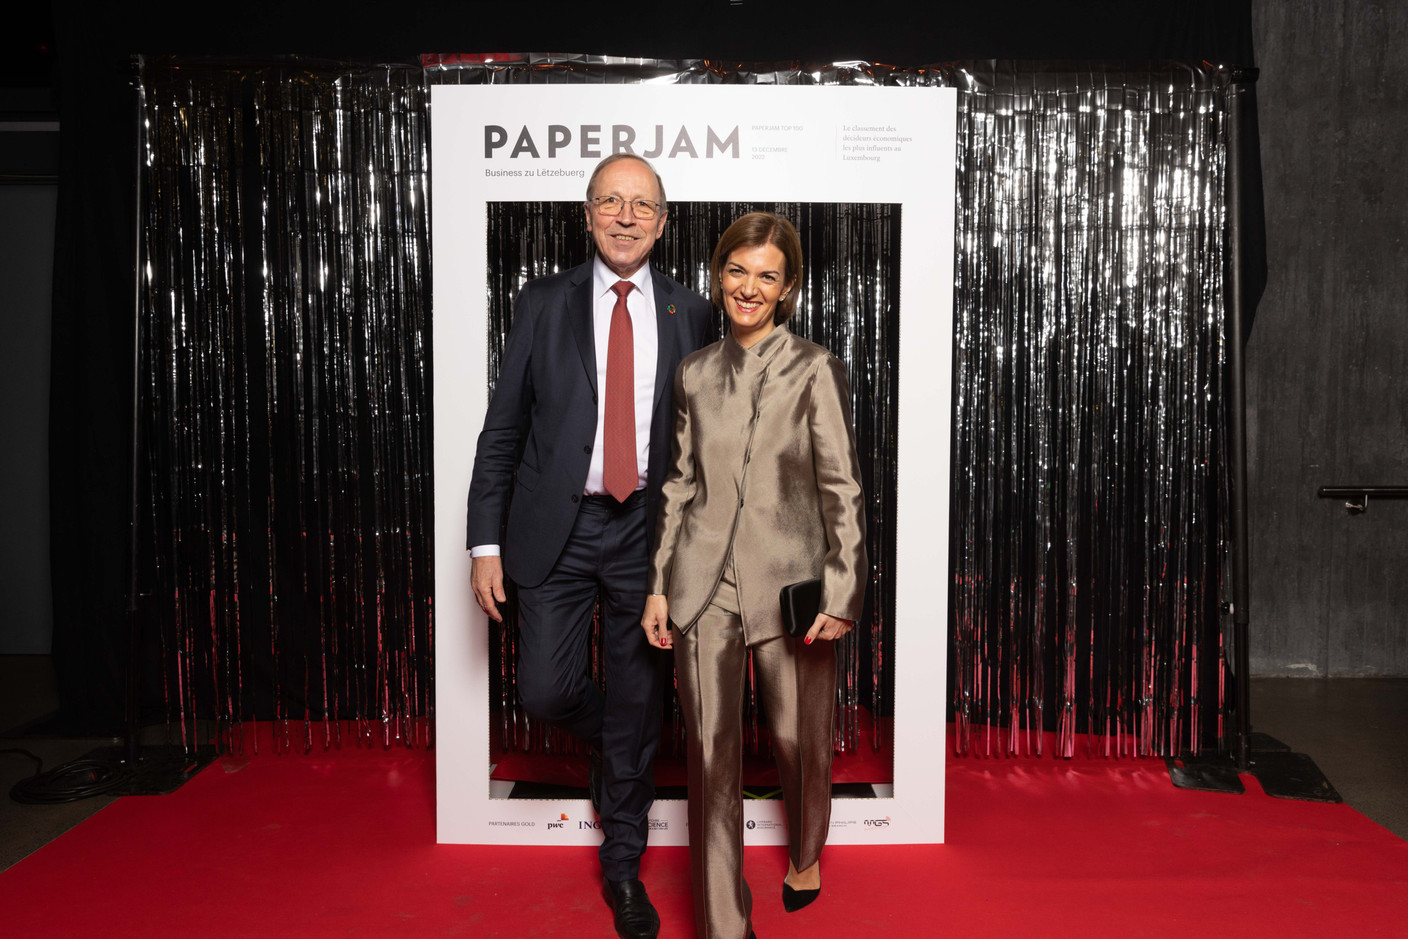 Robert Scharfe et Julie Becker (Bourse de Luxembourg). (Photo: Guy Wolff/Maison Moderne)